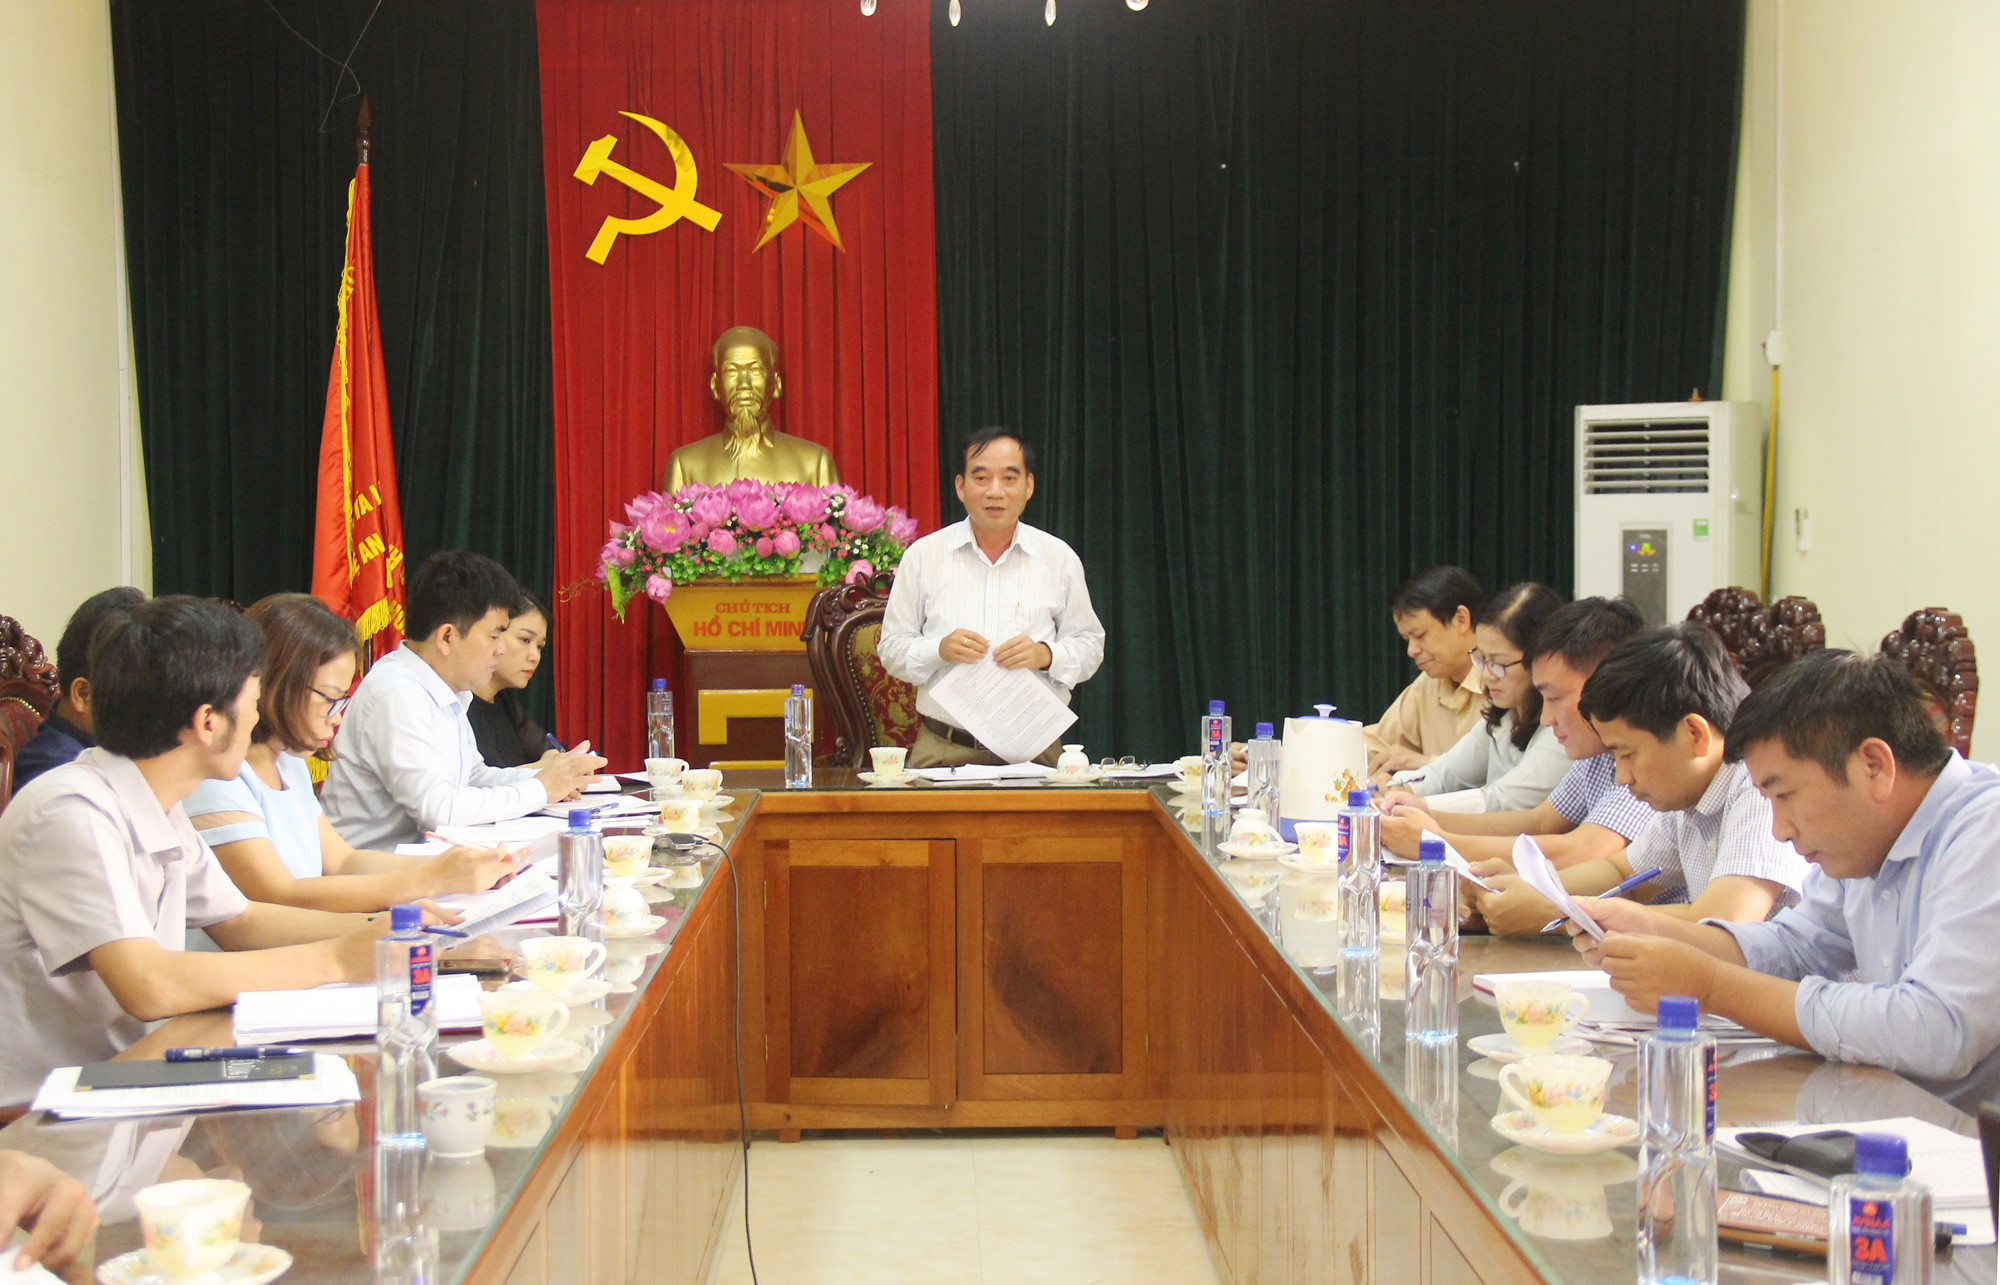    Ông Hoàng Viết Đường – Phó Chủ tịch HĐND tỉnh chủ trì cuộc làm việc. Ảnh: Minh Chi